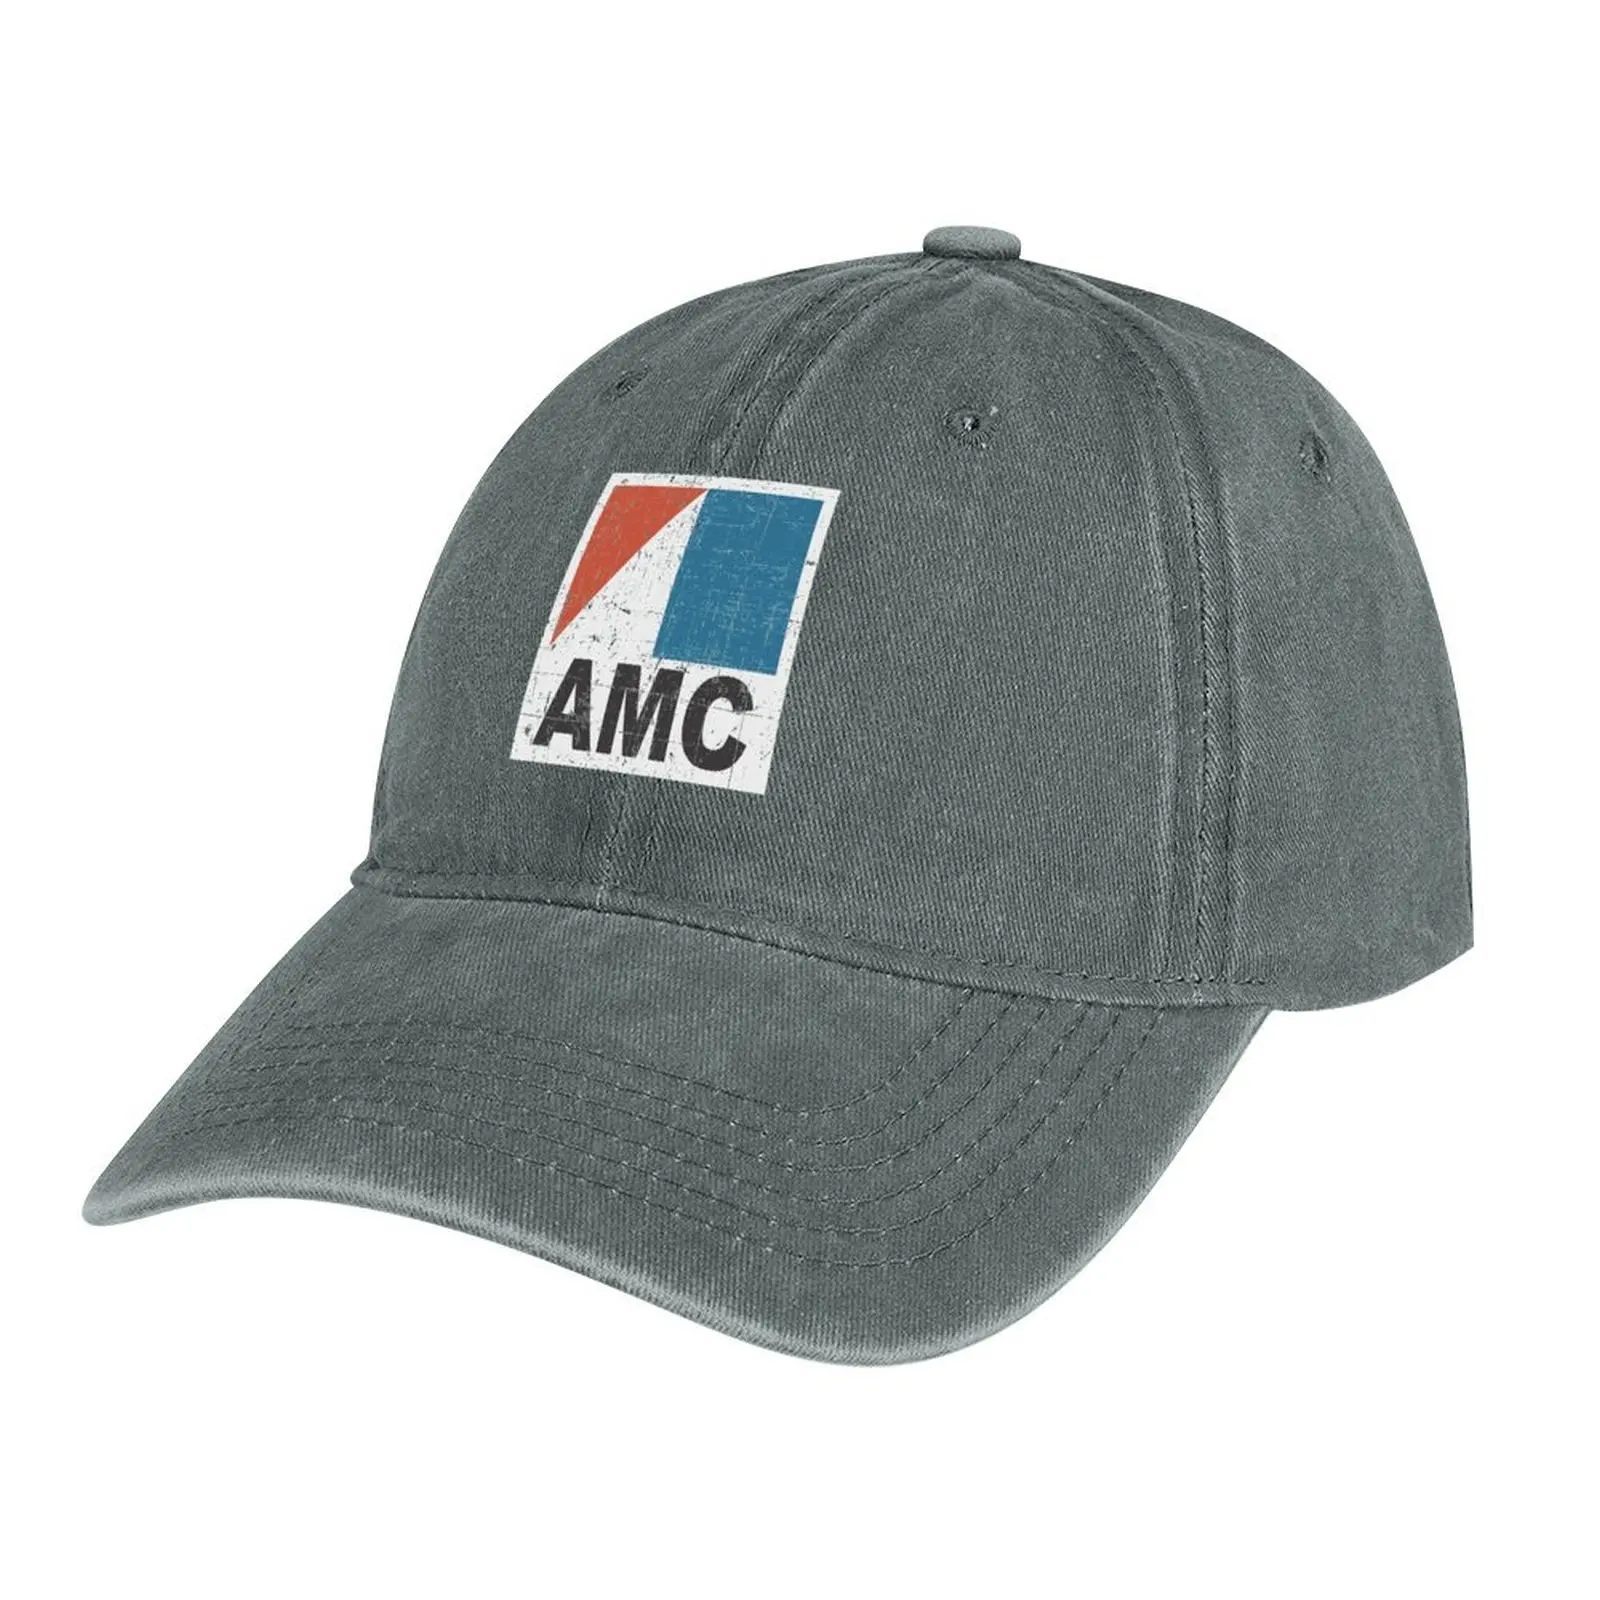 Футболка Amcamc - American Motors Corporation Ковбойская Шляпа летняя шляпа черная Шляпа Бейсболка Мужская Теннисная Женская